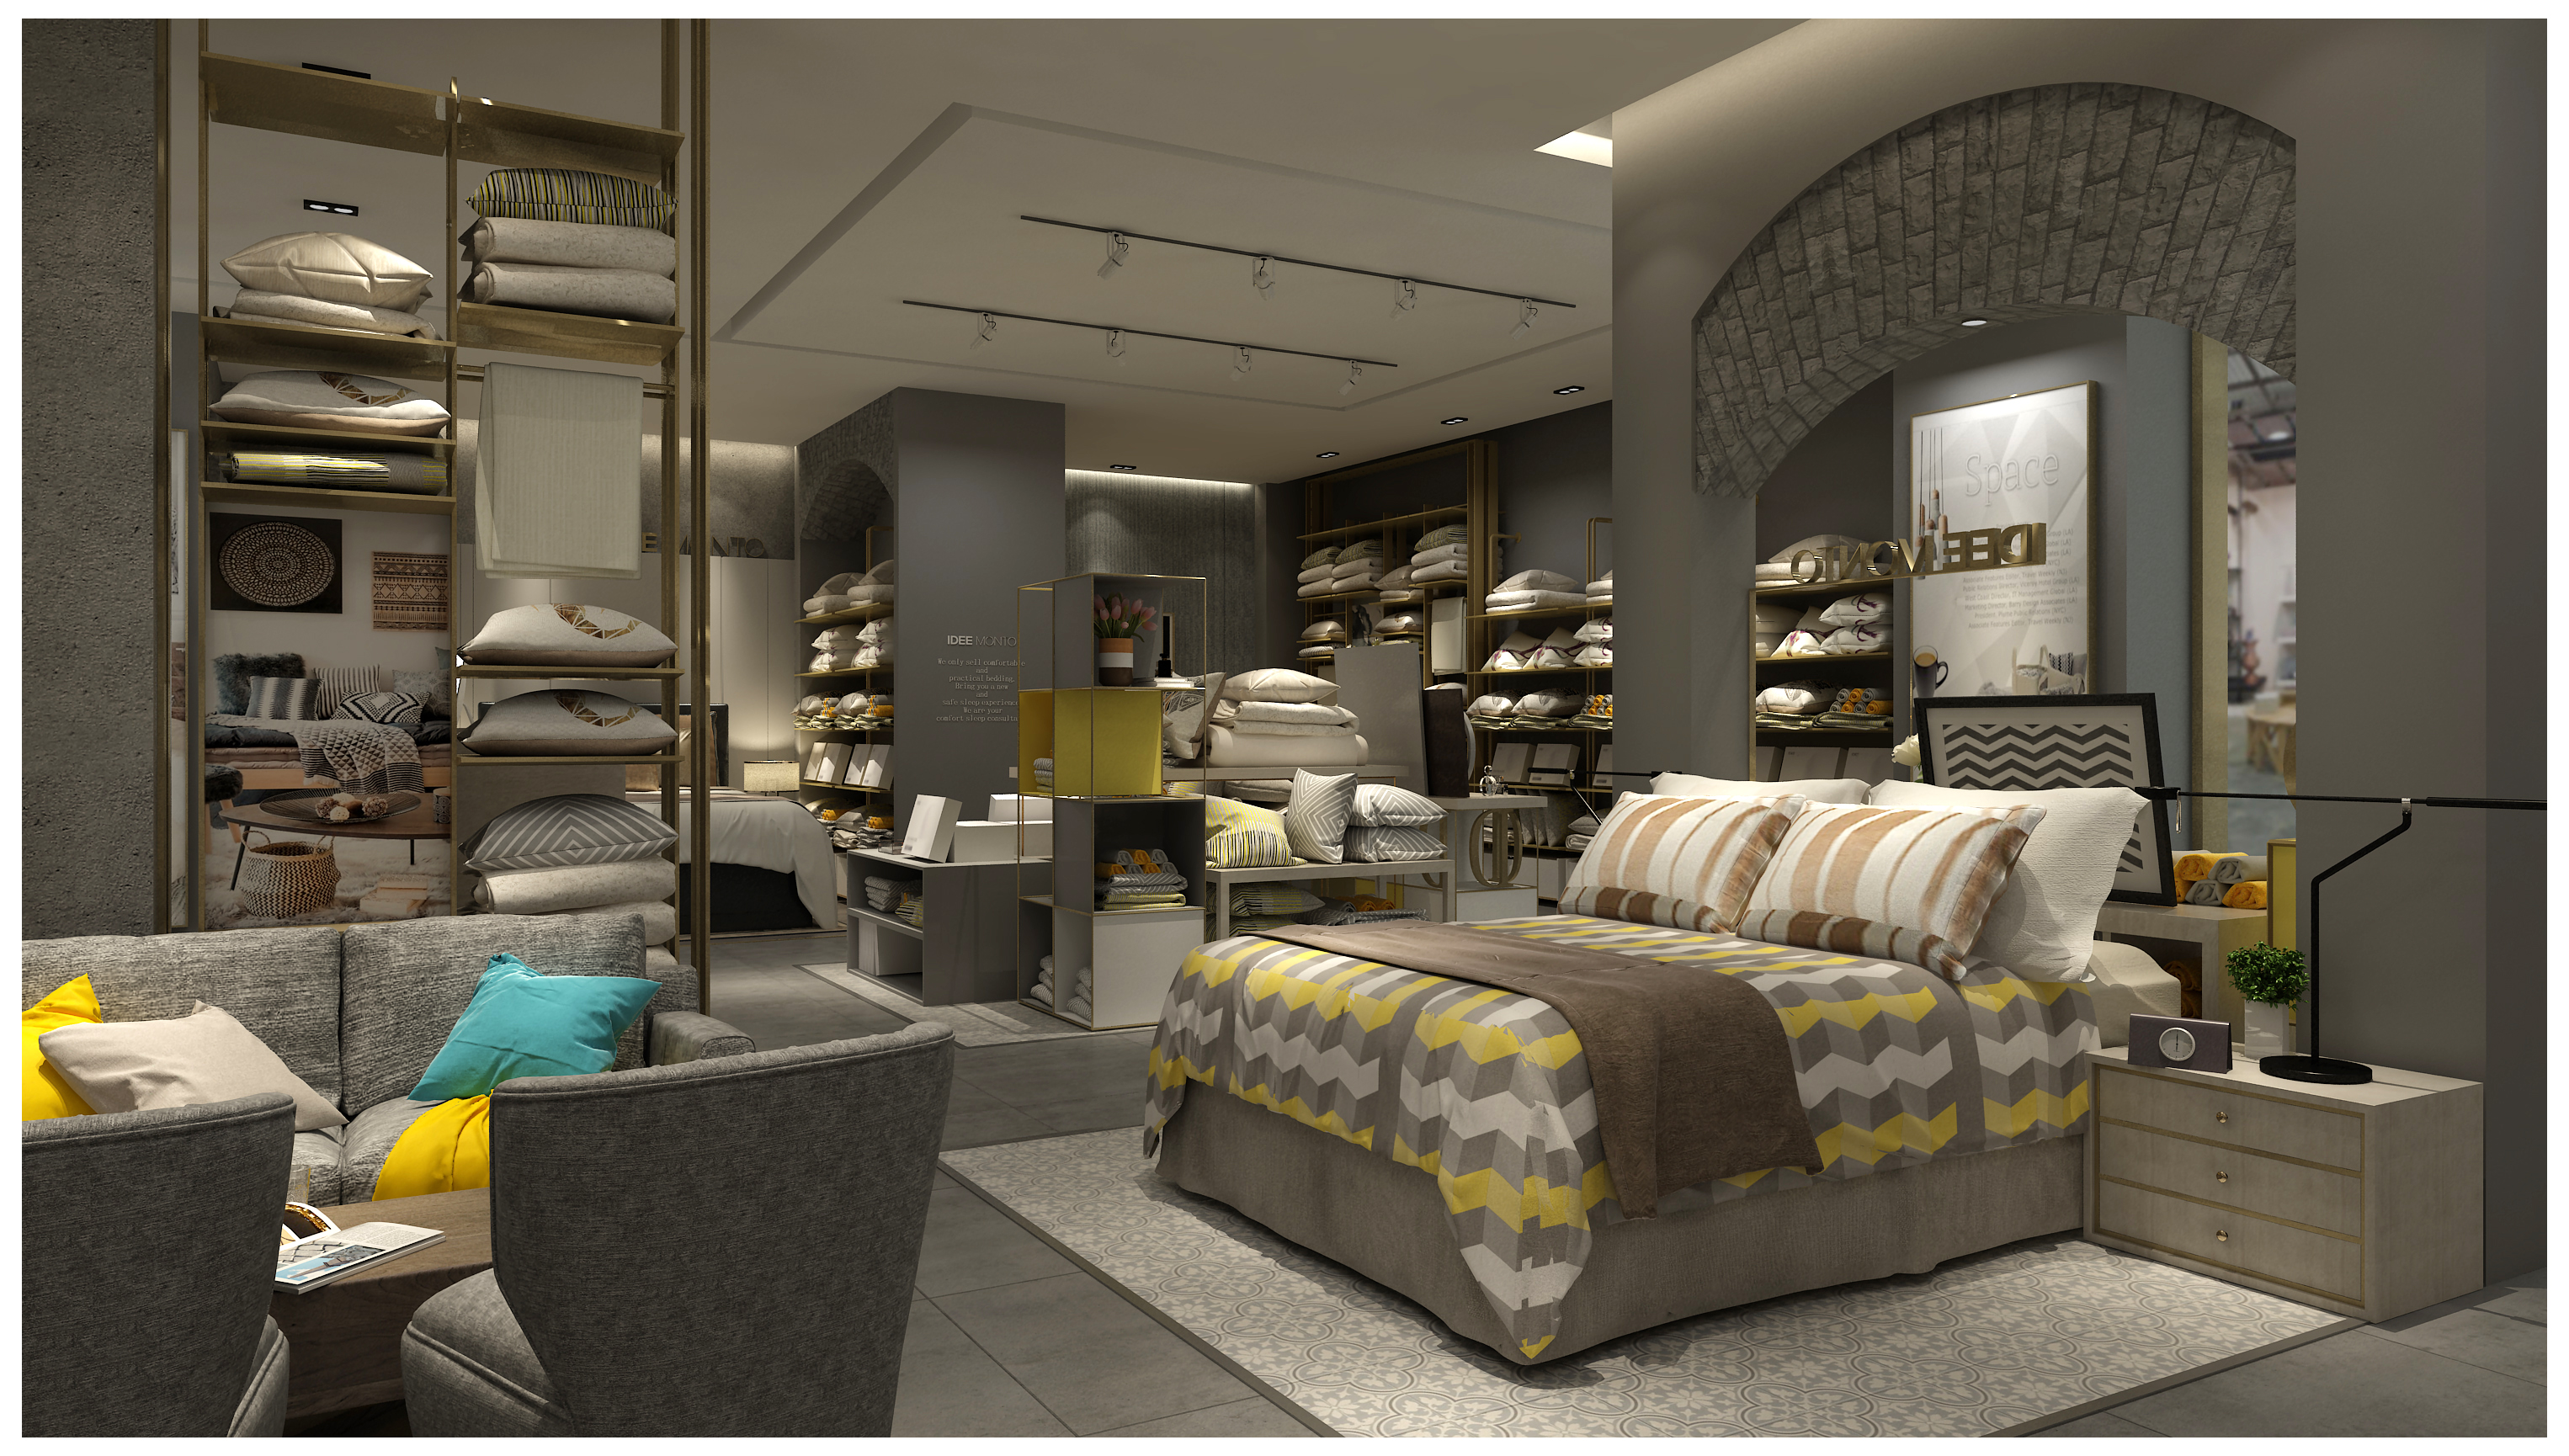 专营店购物空间设计|家纺专营店购物空间设计|购物空间设计